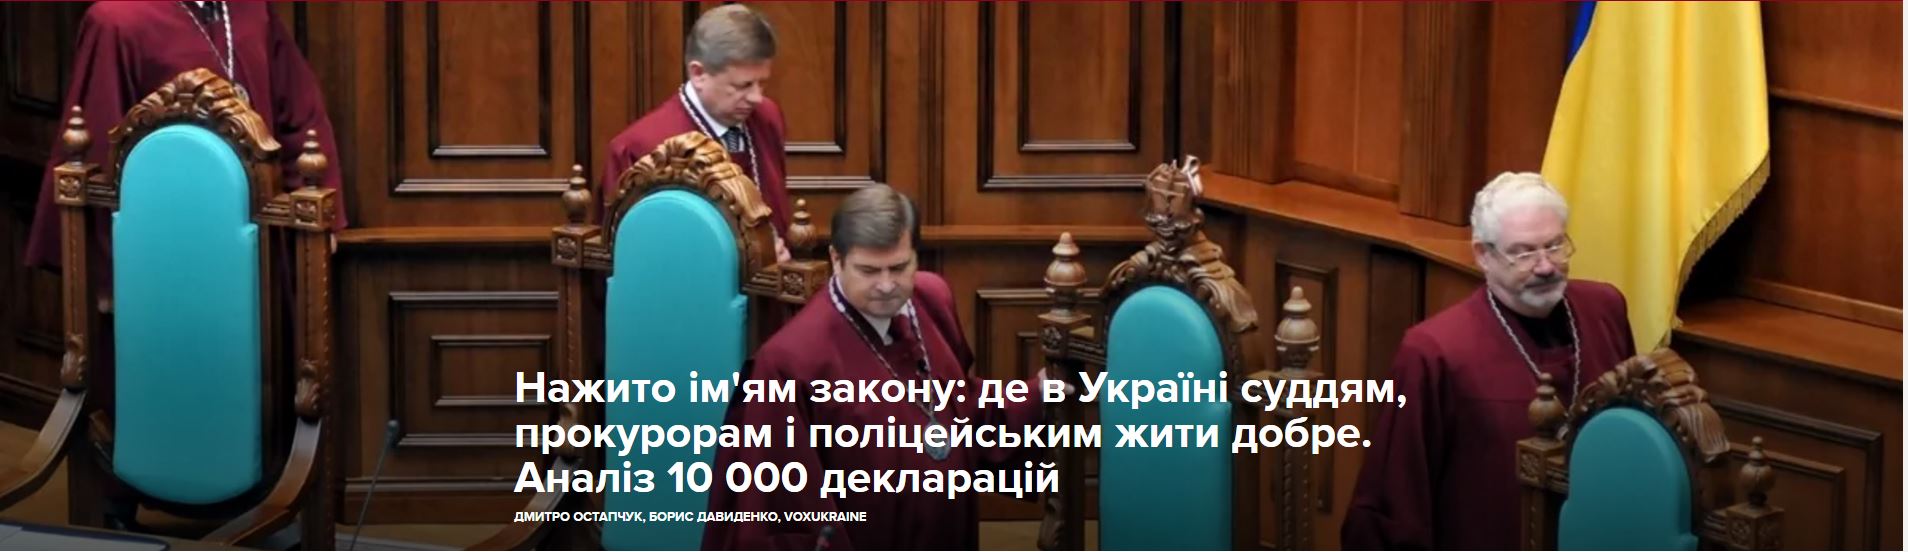 Нажито ім’ям закону: де в Україні суддям, прокурорам і поліцейським жити добре. Аналіз 10 000 декларацій.